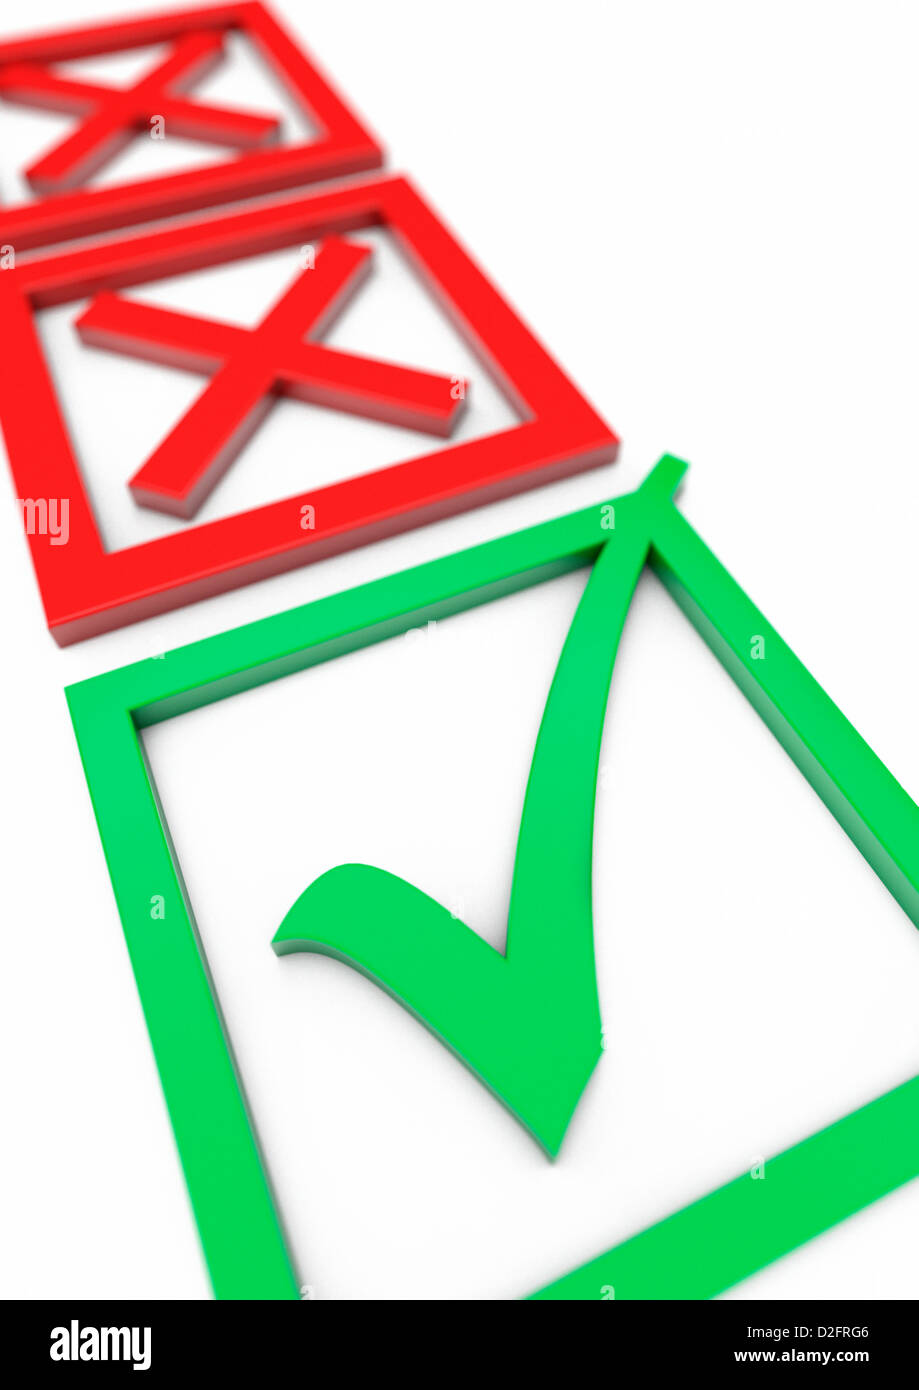 Papeleta de voto o aprobación concepto con dos cruces rojas en el fondo y un tick verde marca en primer plano Foto de stock